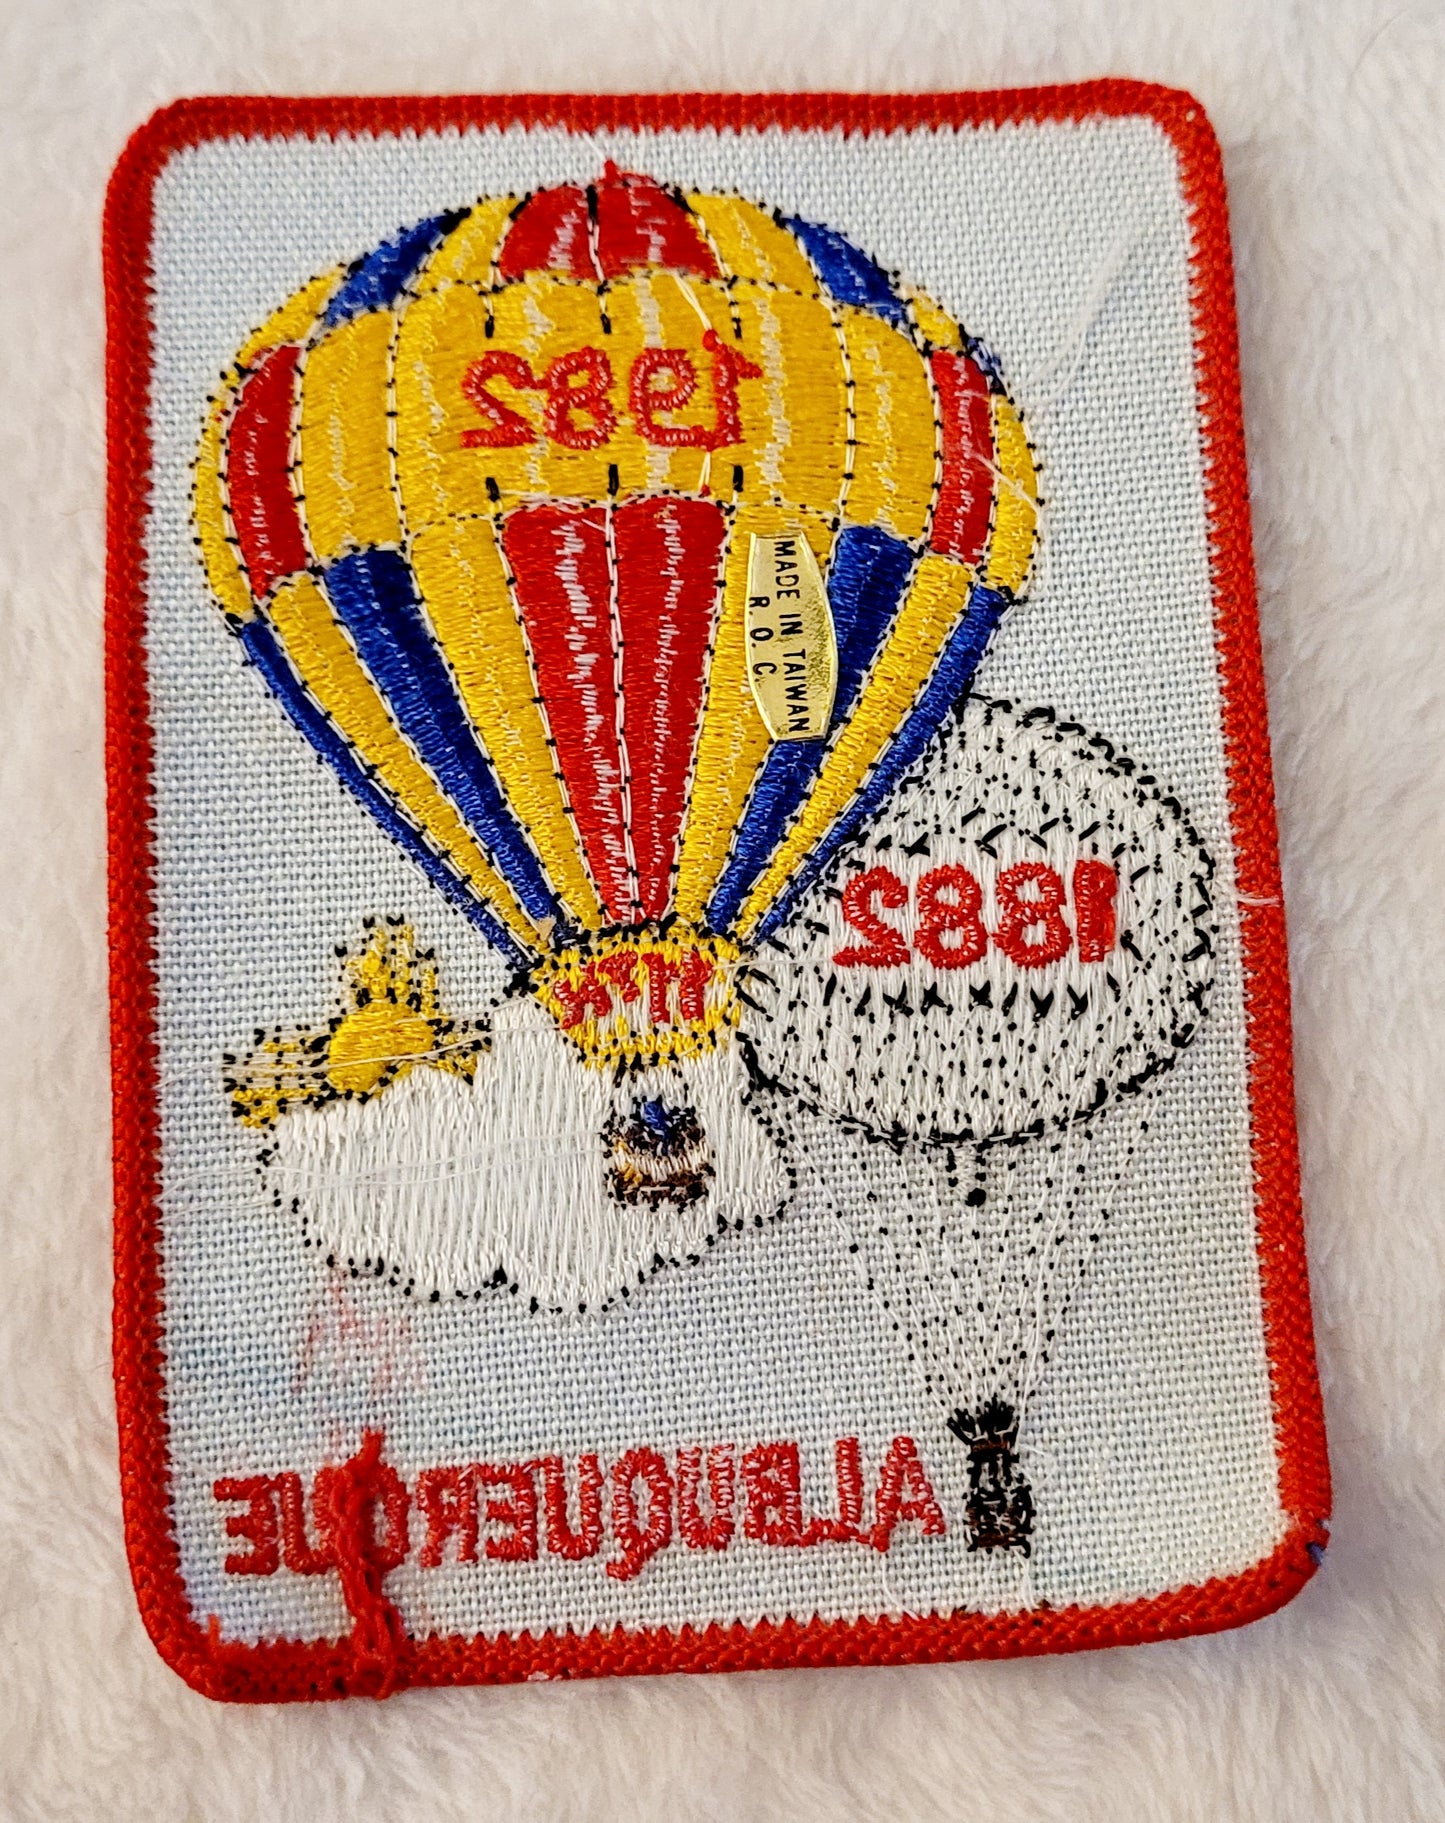 11th Annual ABQ Balloon Fiesta 1982 *Hot Air Balloon Patch